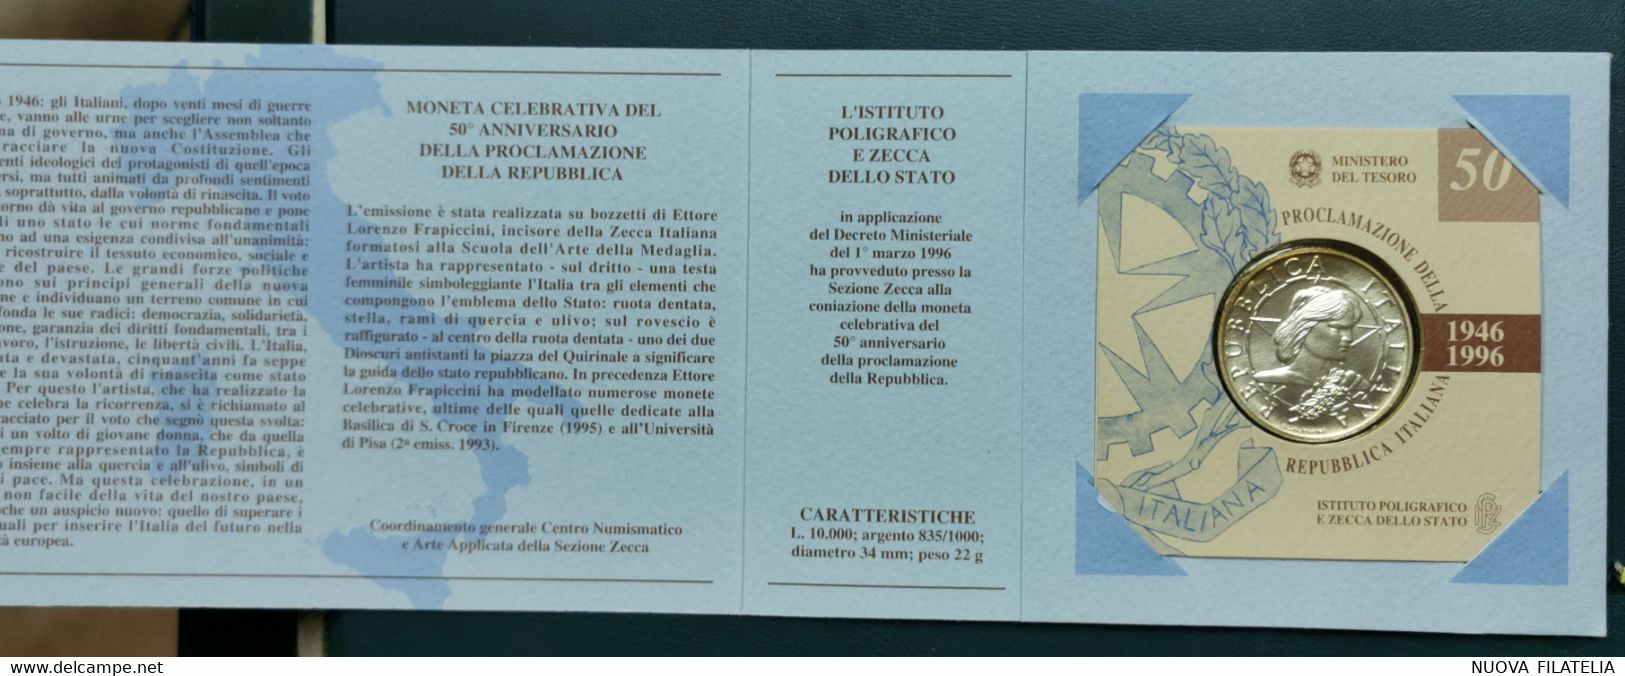 ITALIA 1996 PROCLAMAZIONE DELLA REPUBBLICA - Commemorative